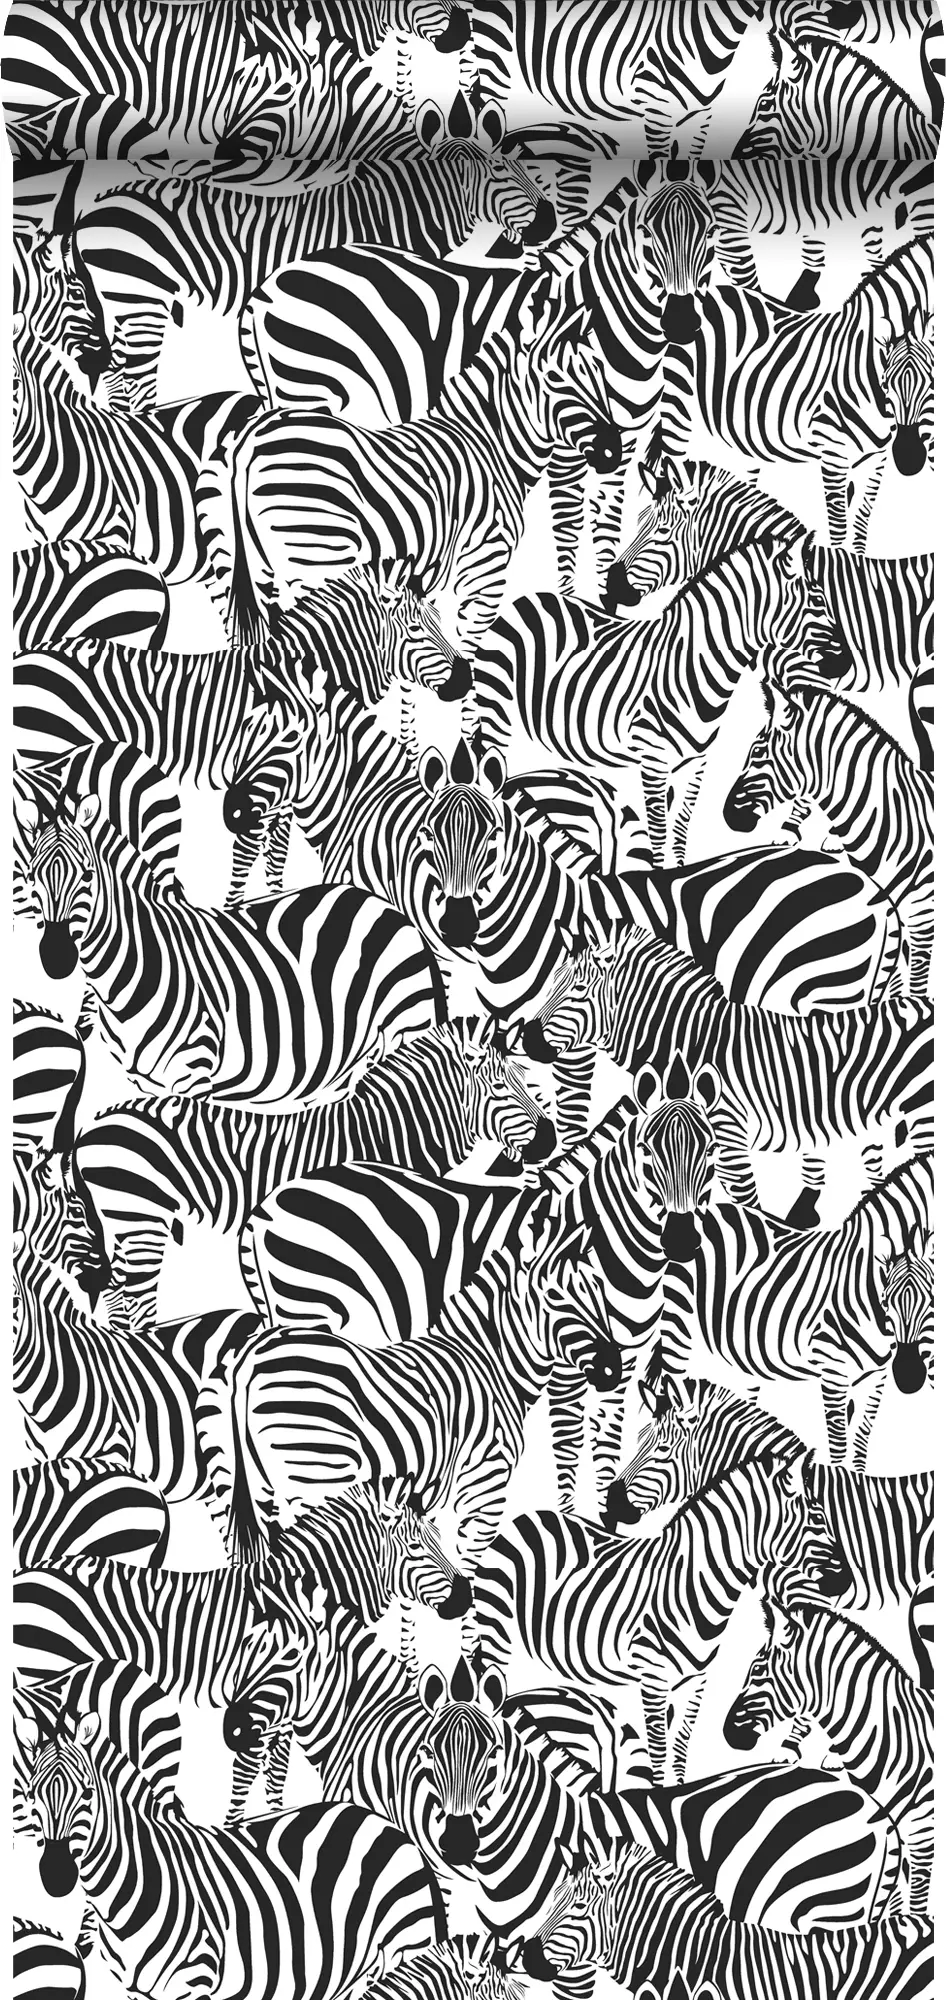 Tapete Zebras